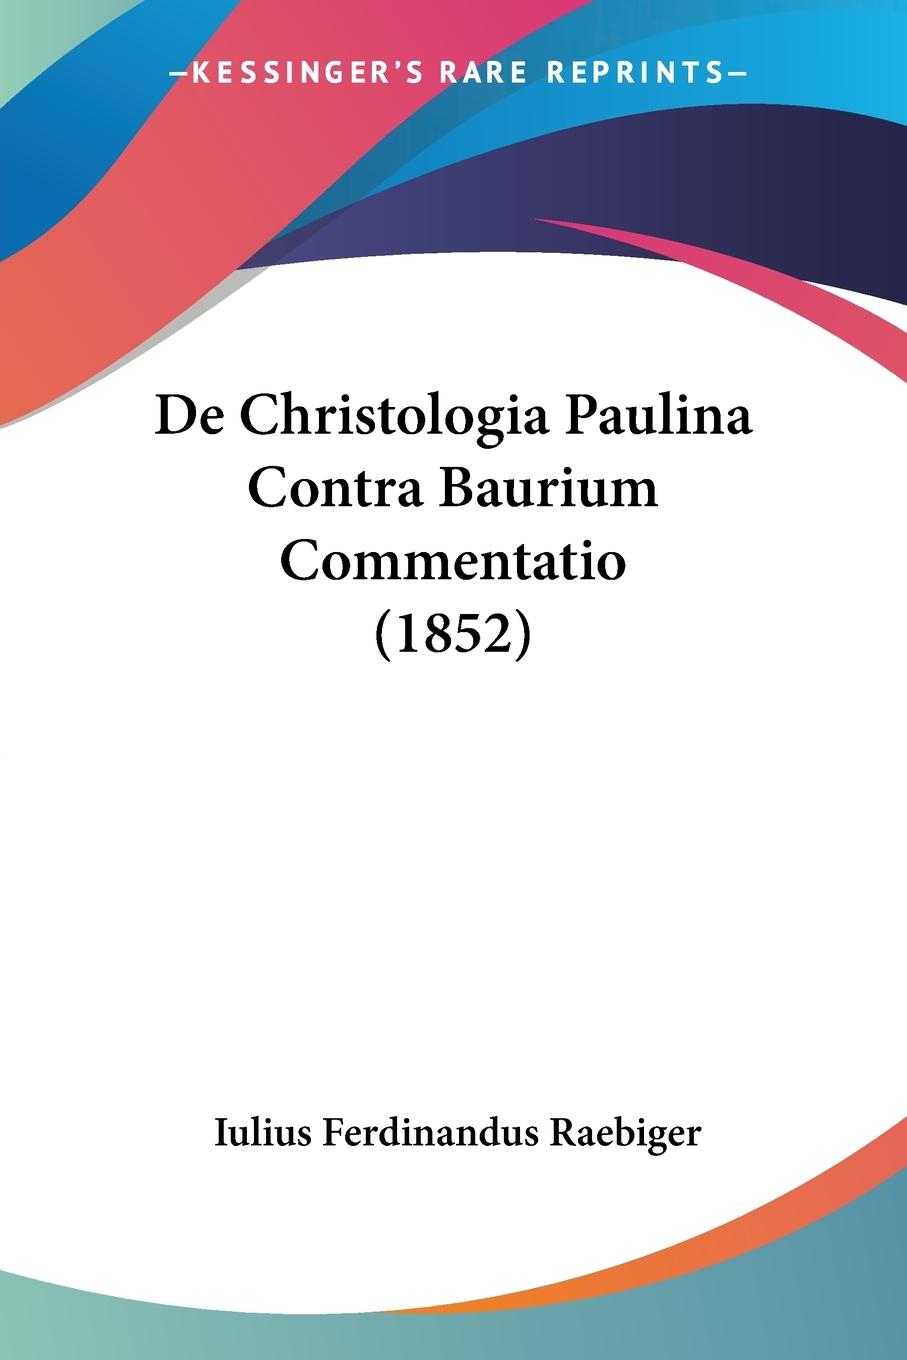 De Christologia Paulina Contra Baurium Commentatio (1852) - Raebiger, Iulius Ferdinandus